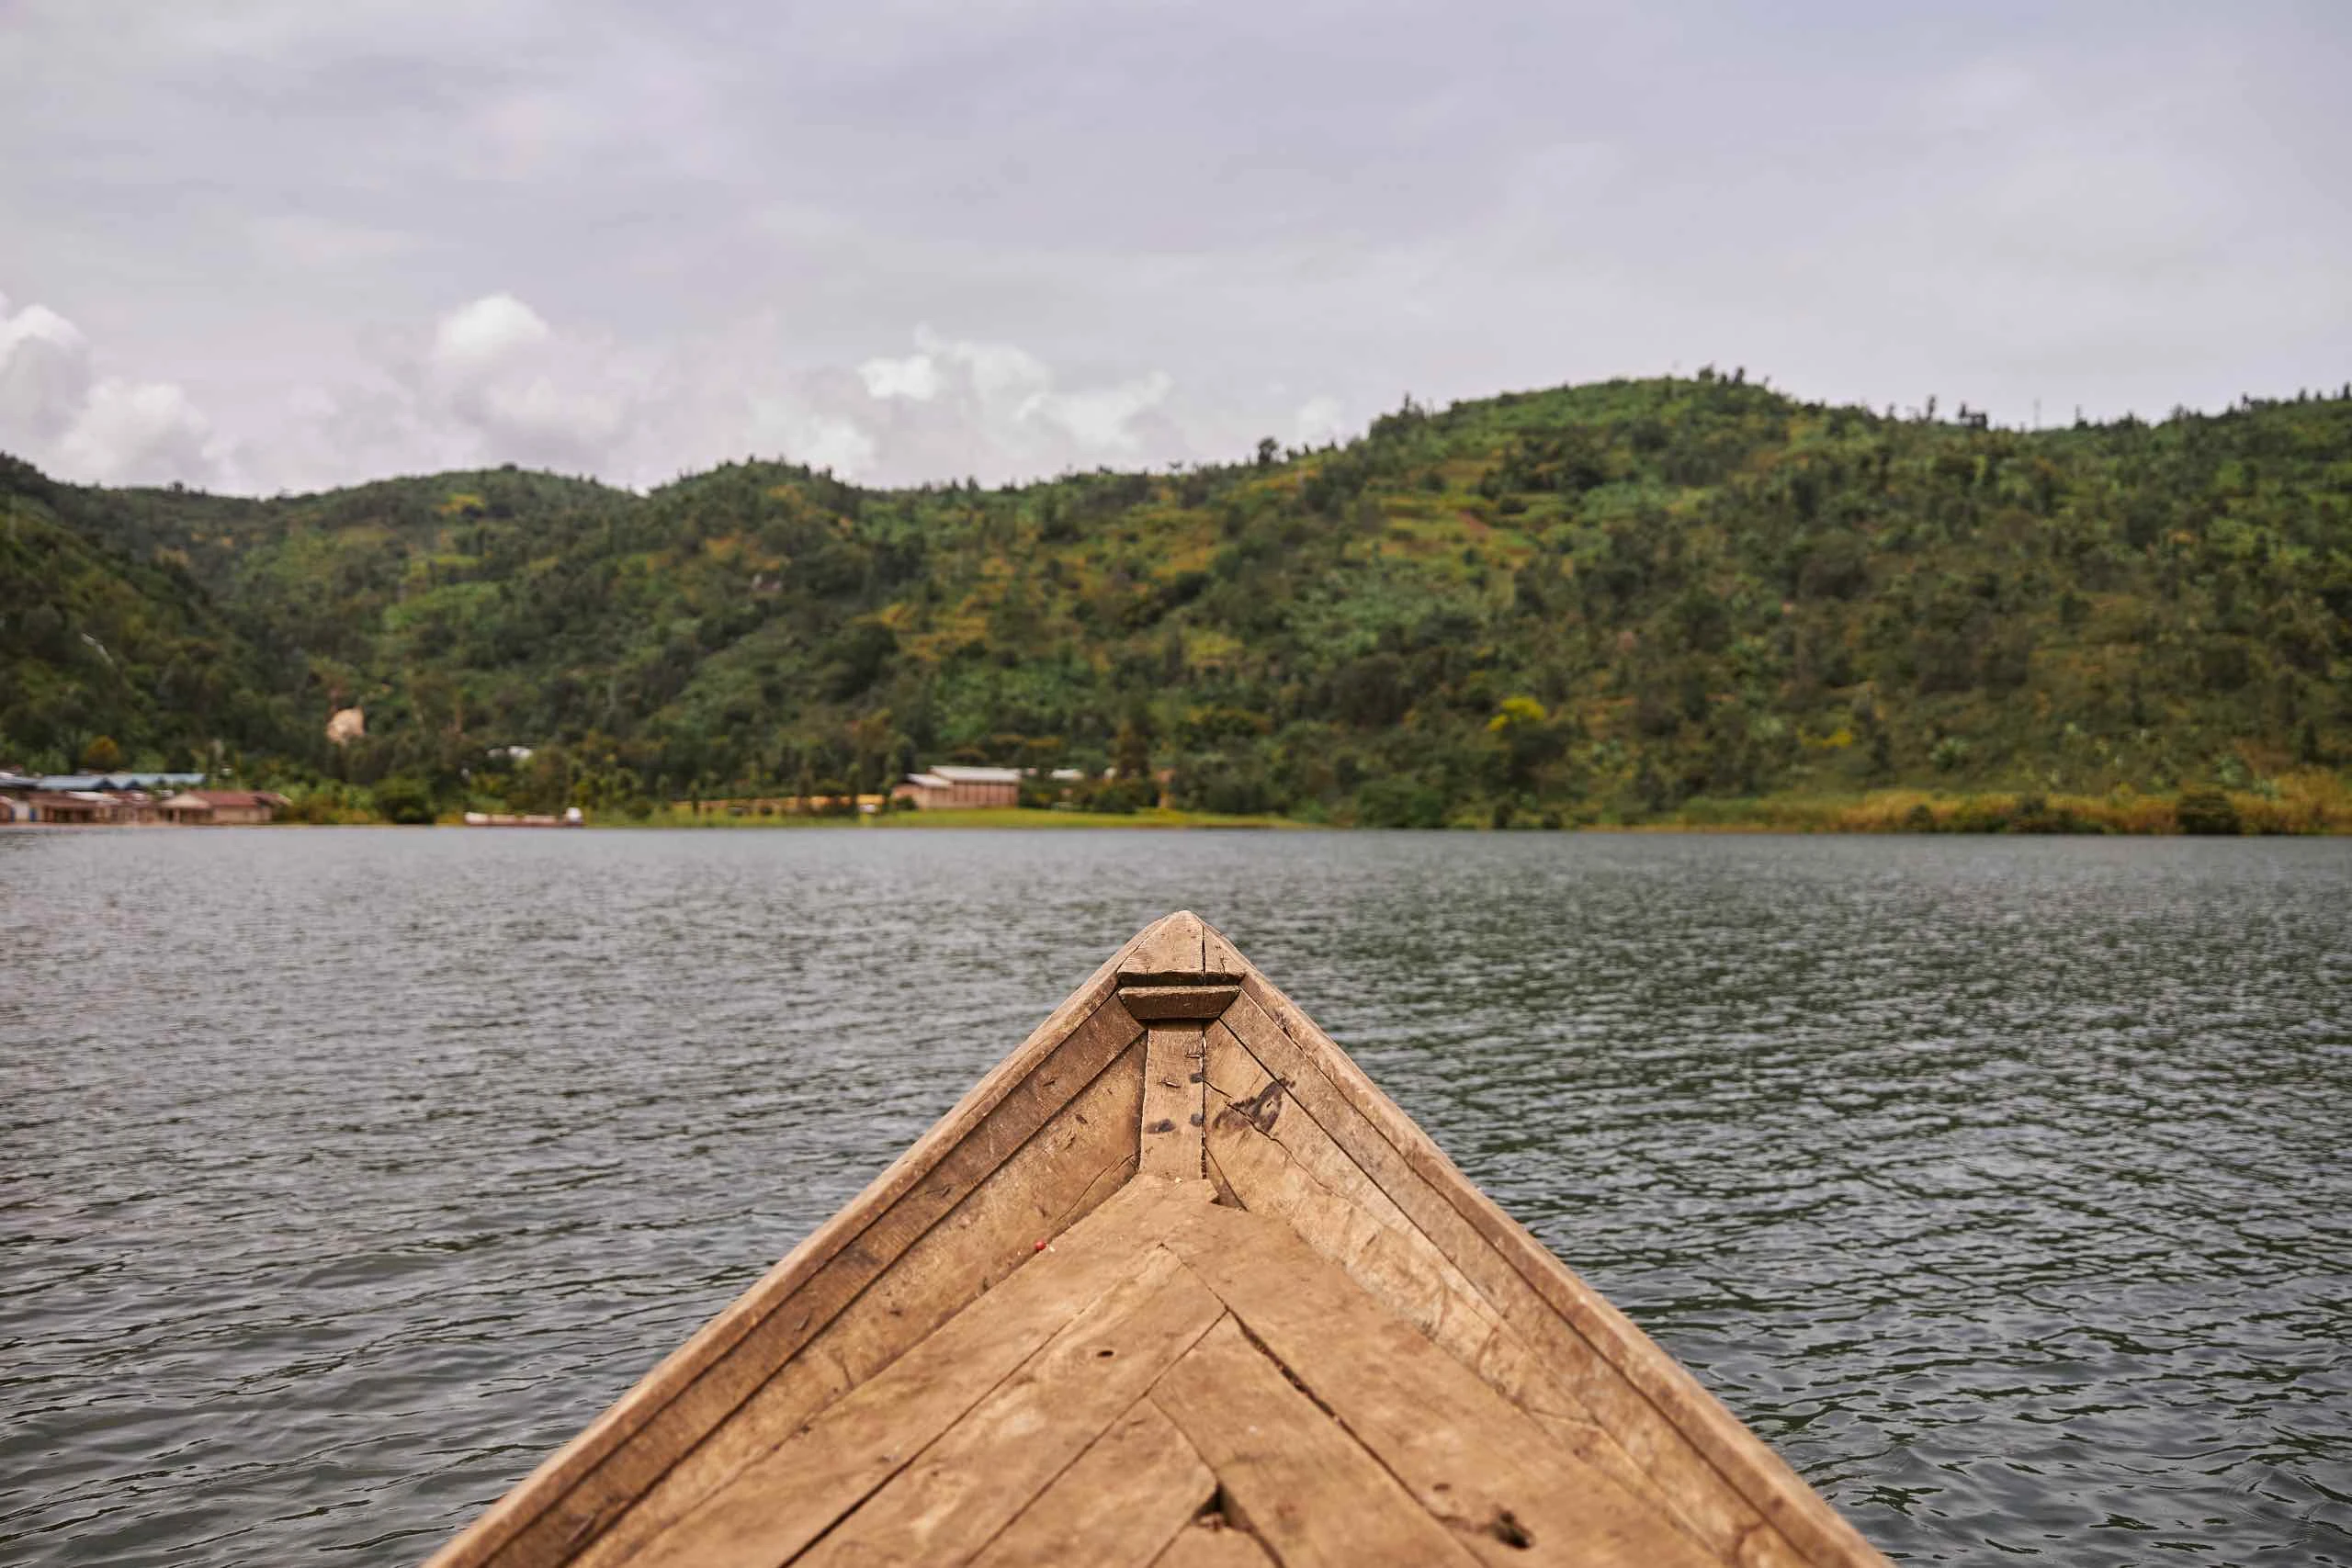 Dünyanın En Büyük Yapay Gölü: Volta